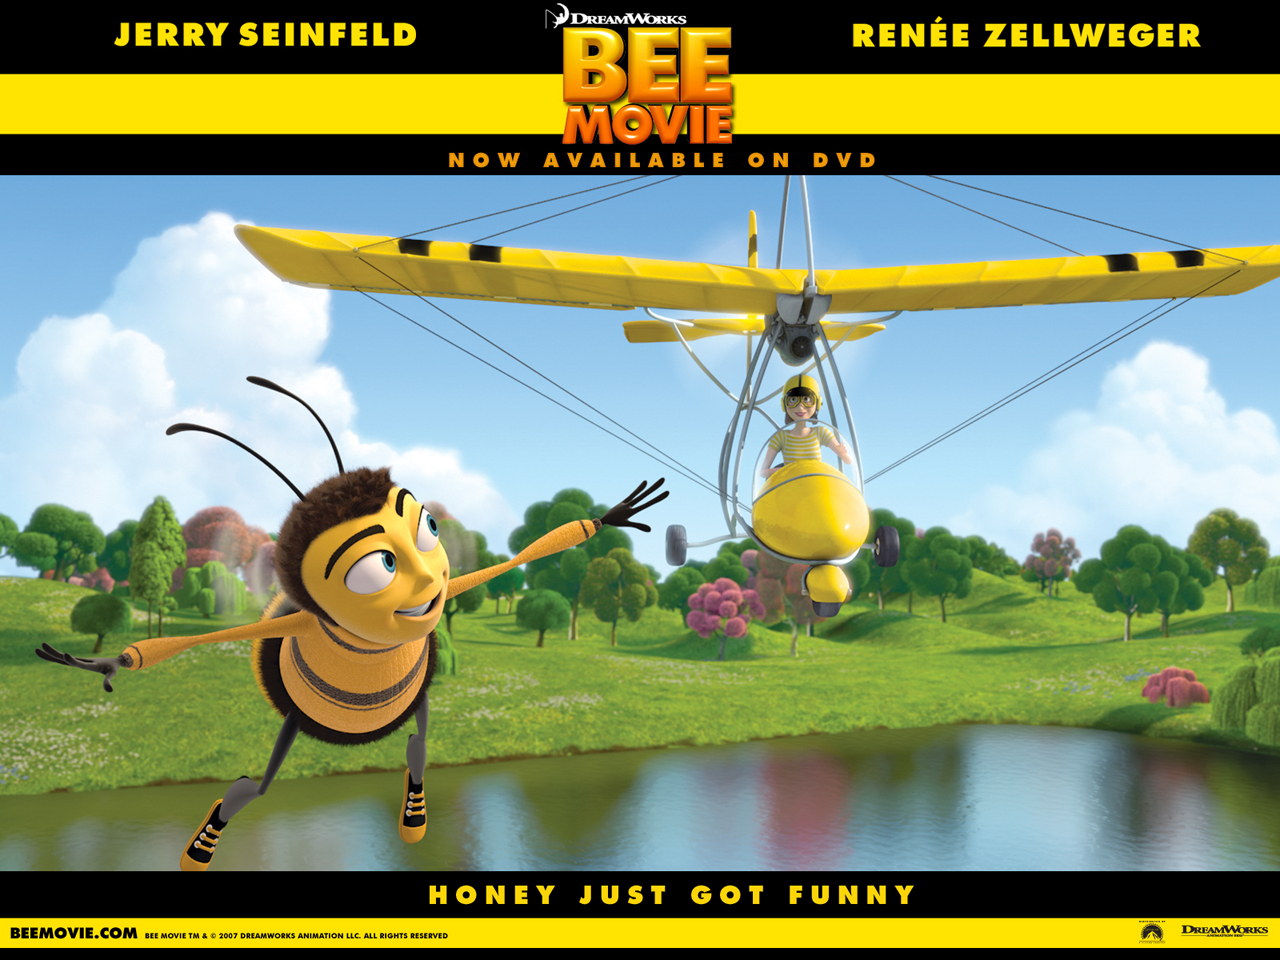 "Bee Movie" desktop wallpaper (1280 x 960 pixels)